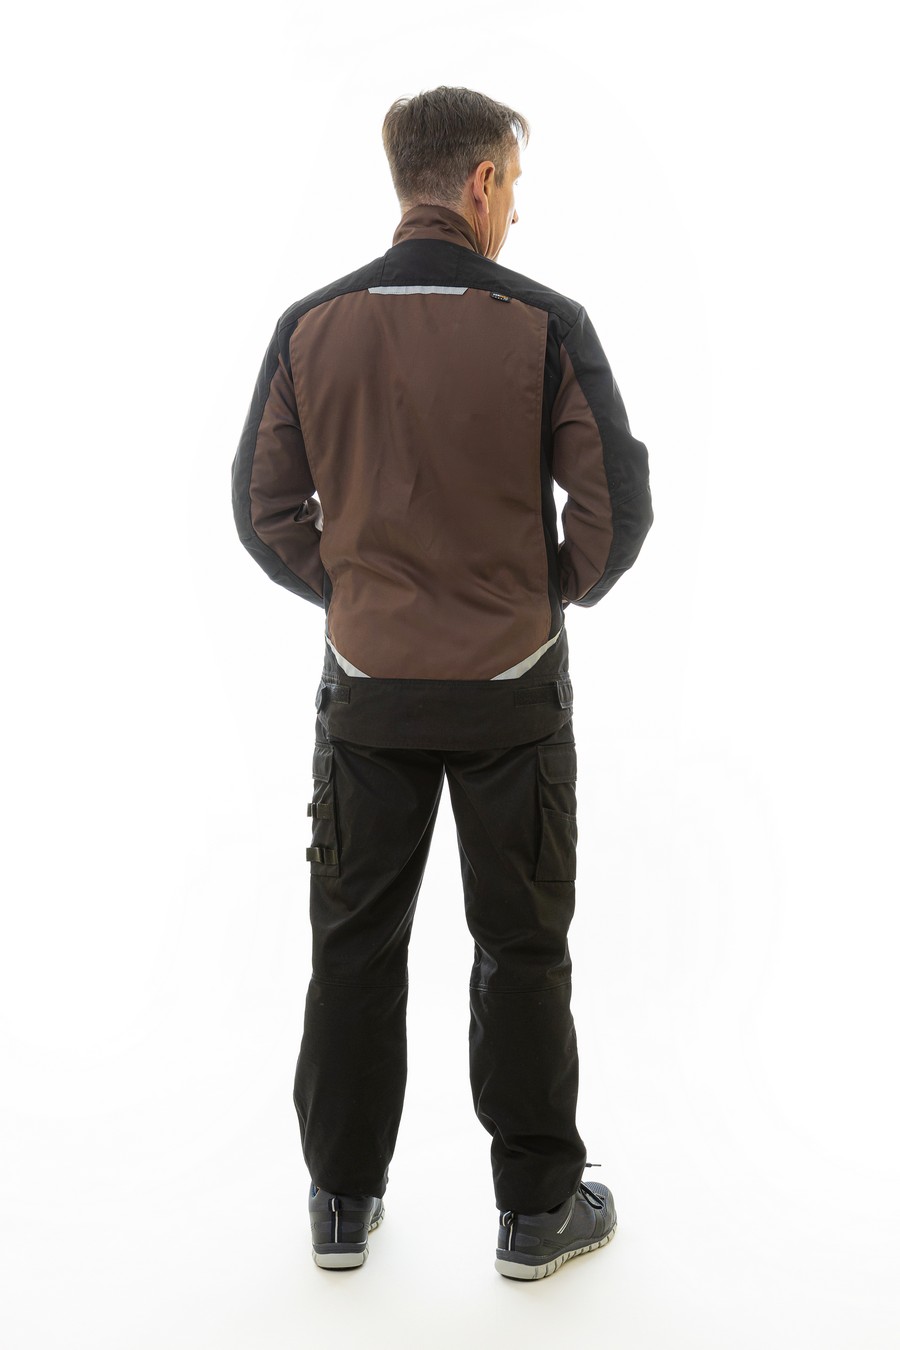 Куртка BRODEKS KS202, коричневый/черный